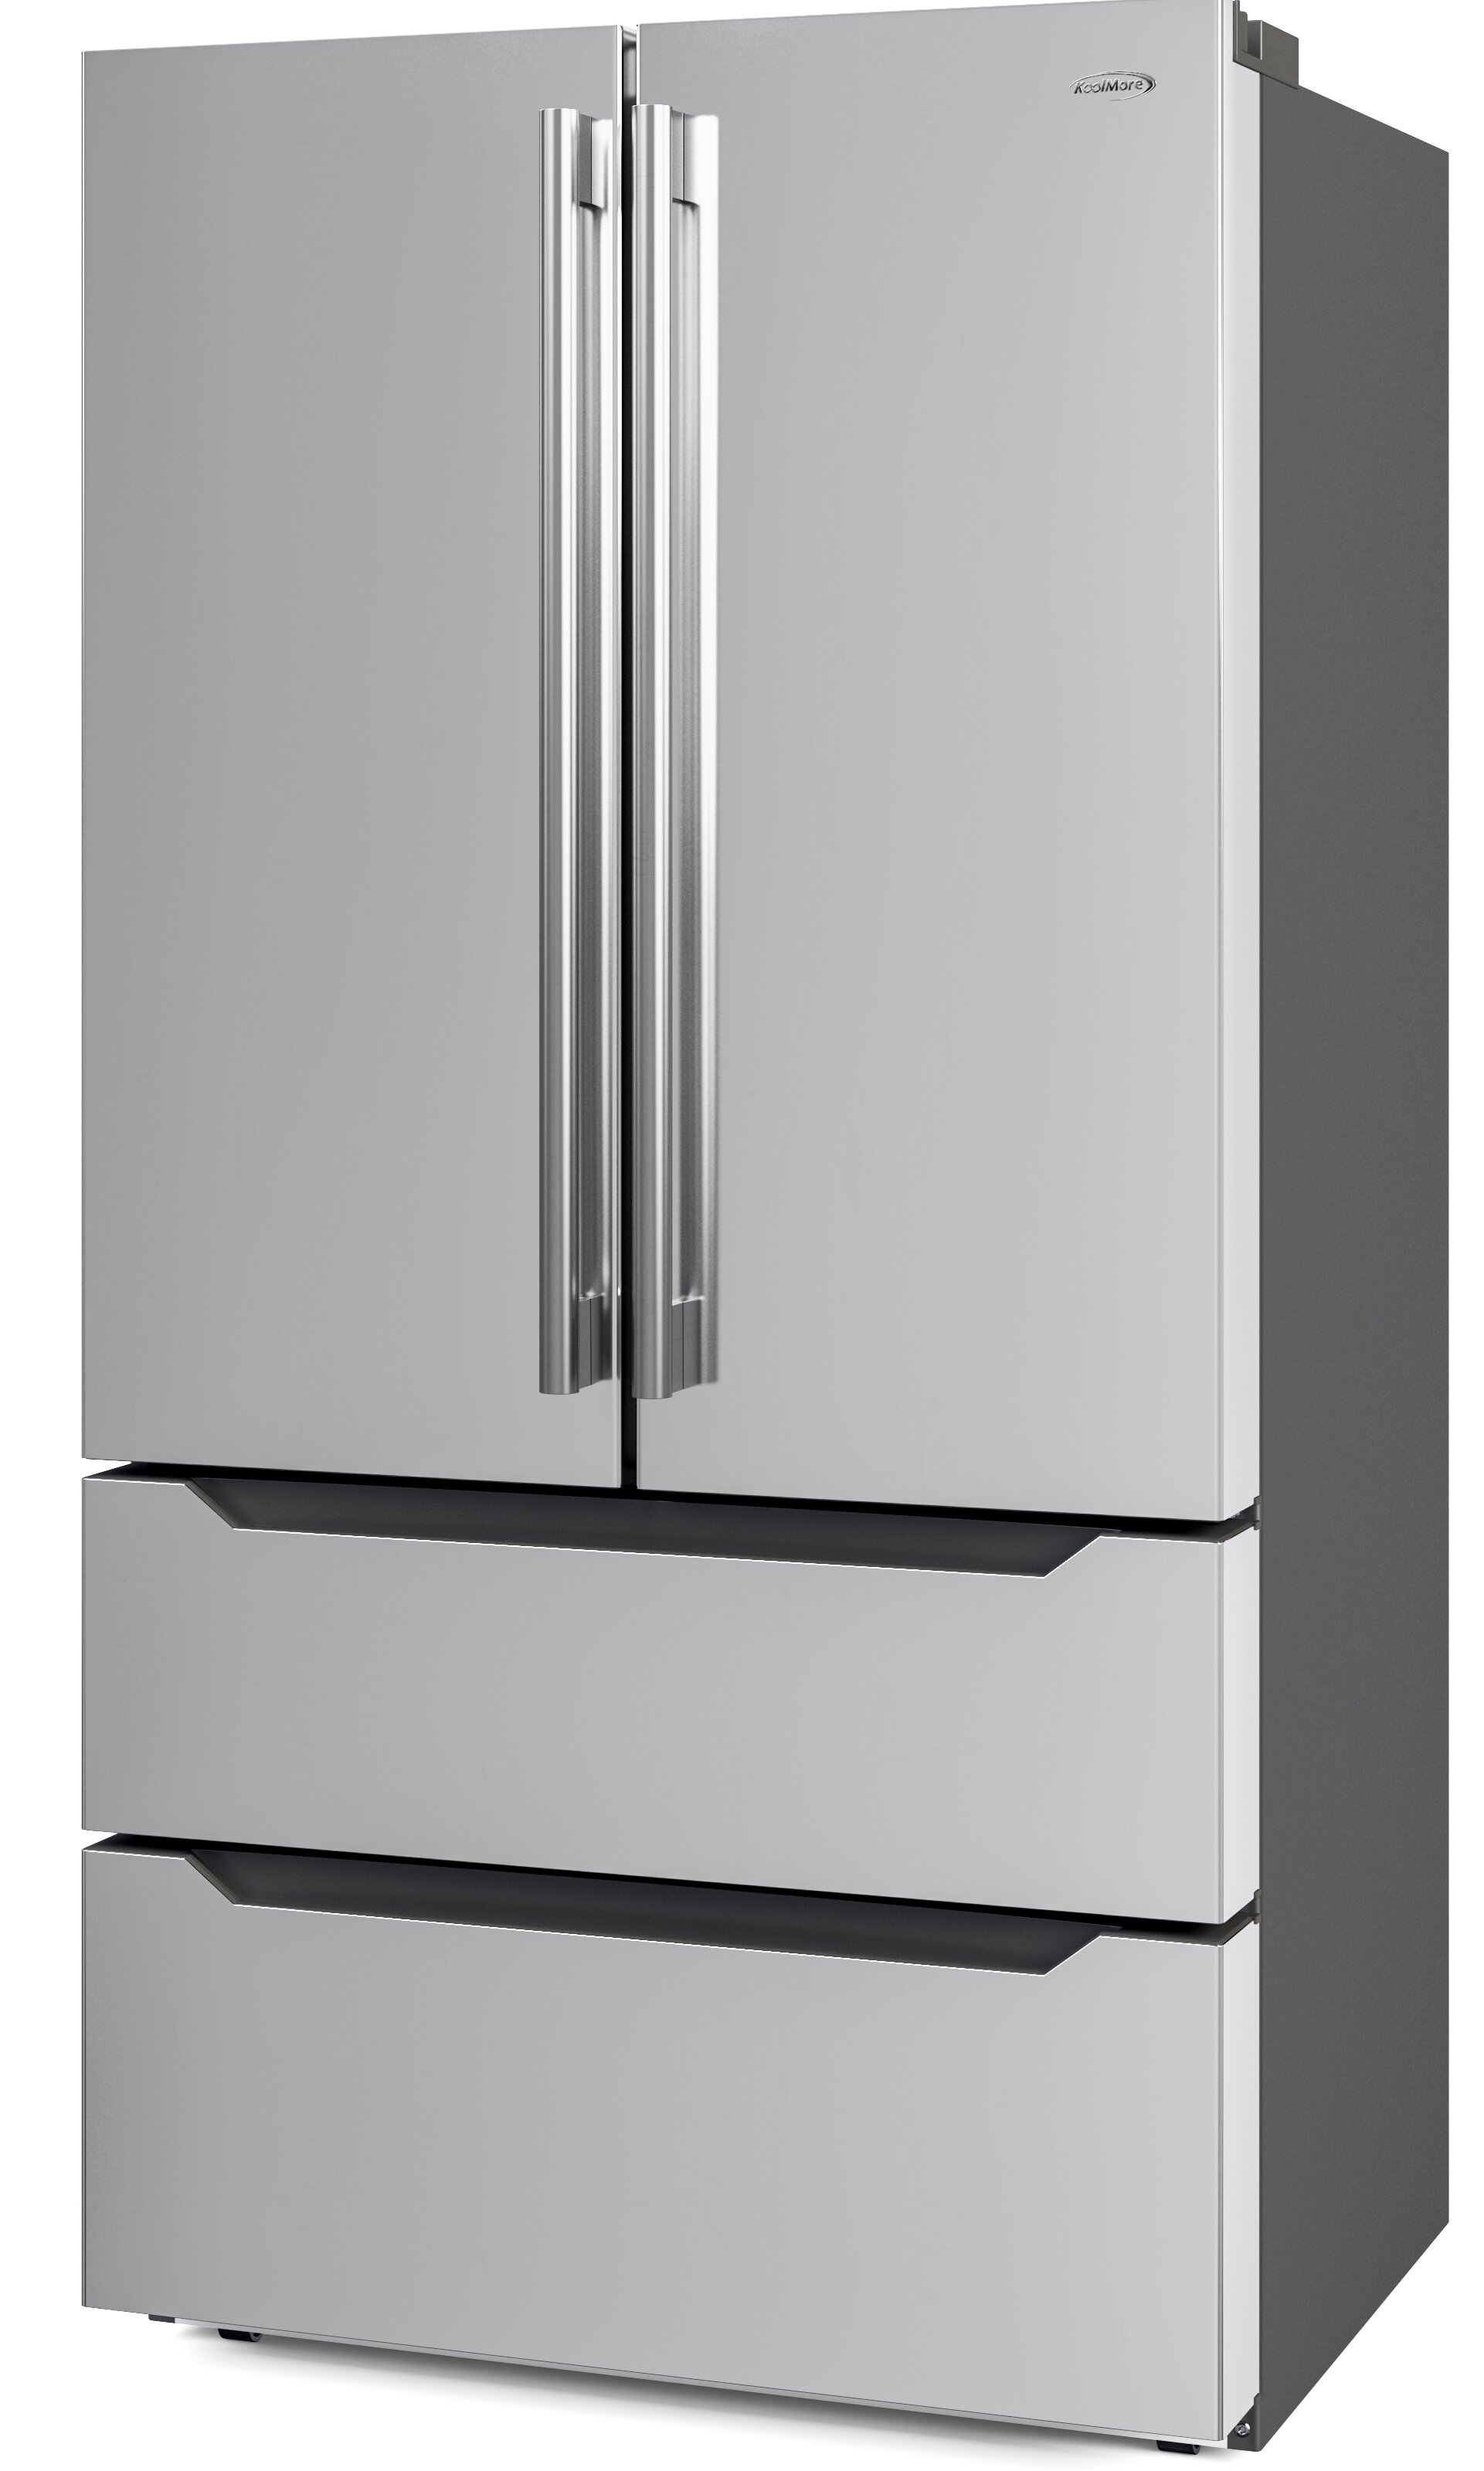 LG Studio Refrigerators - Counter Depth French Door 26.5 Cu Ft